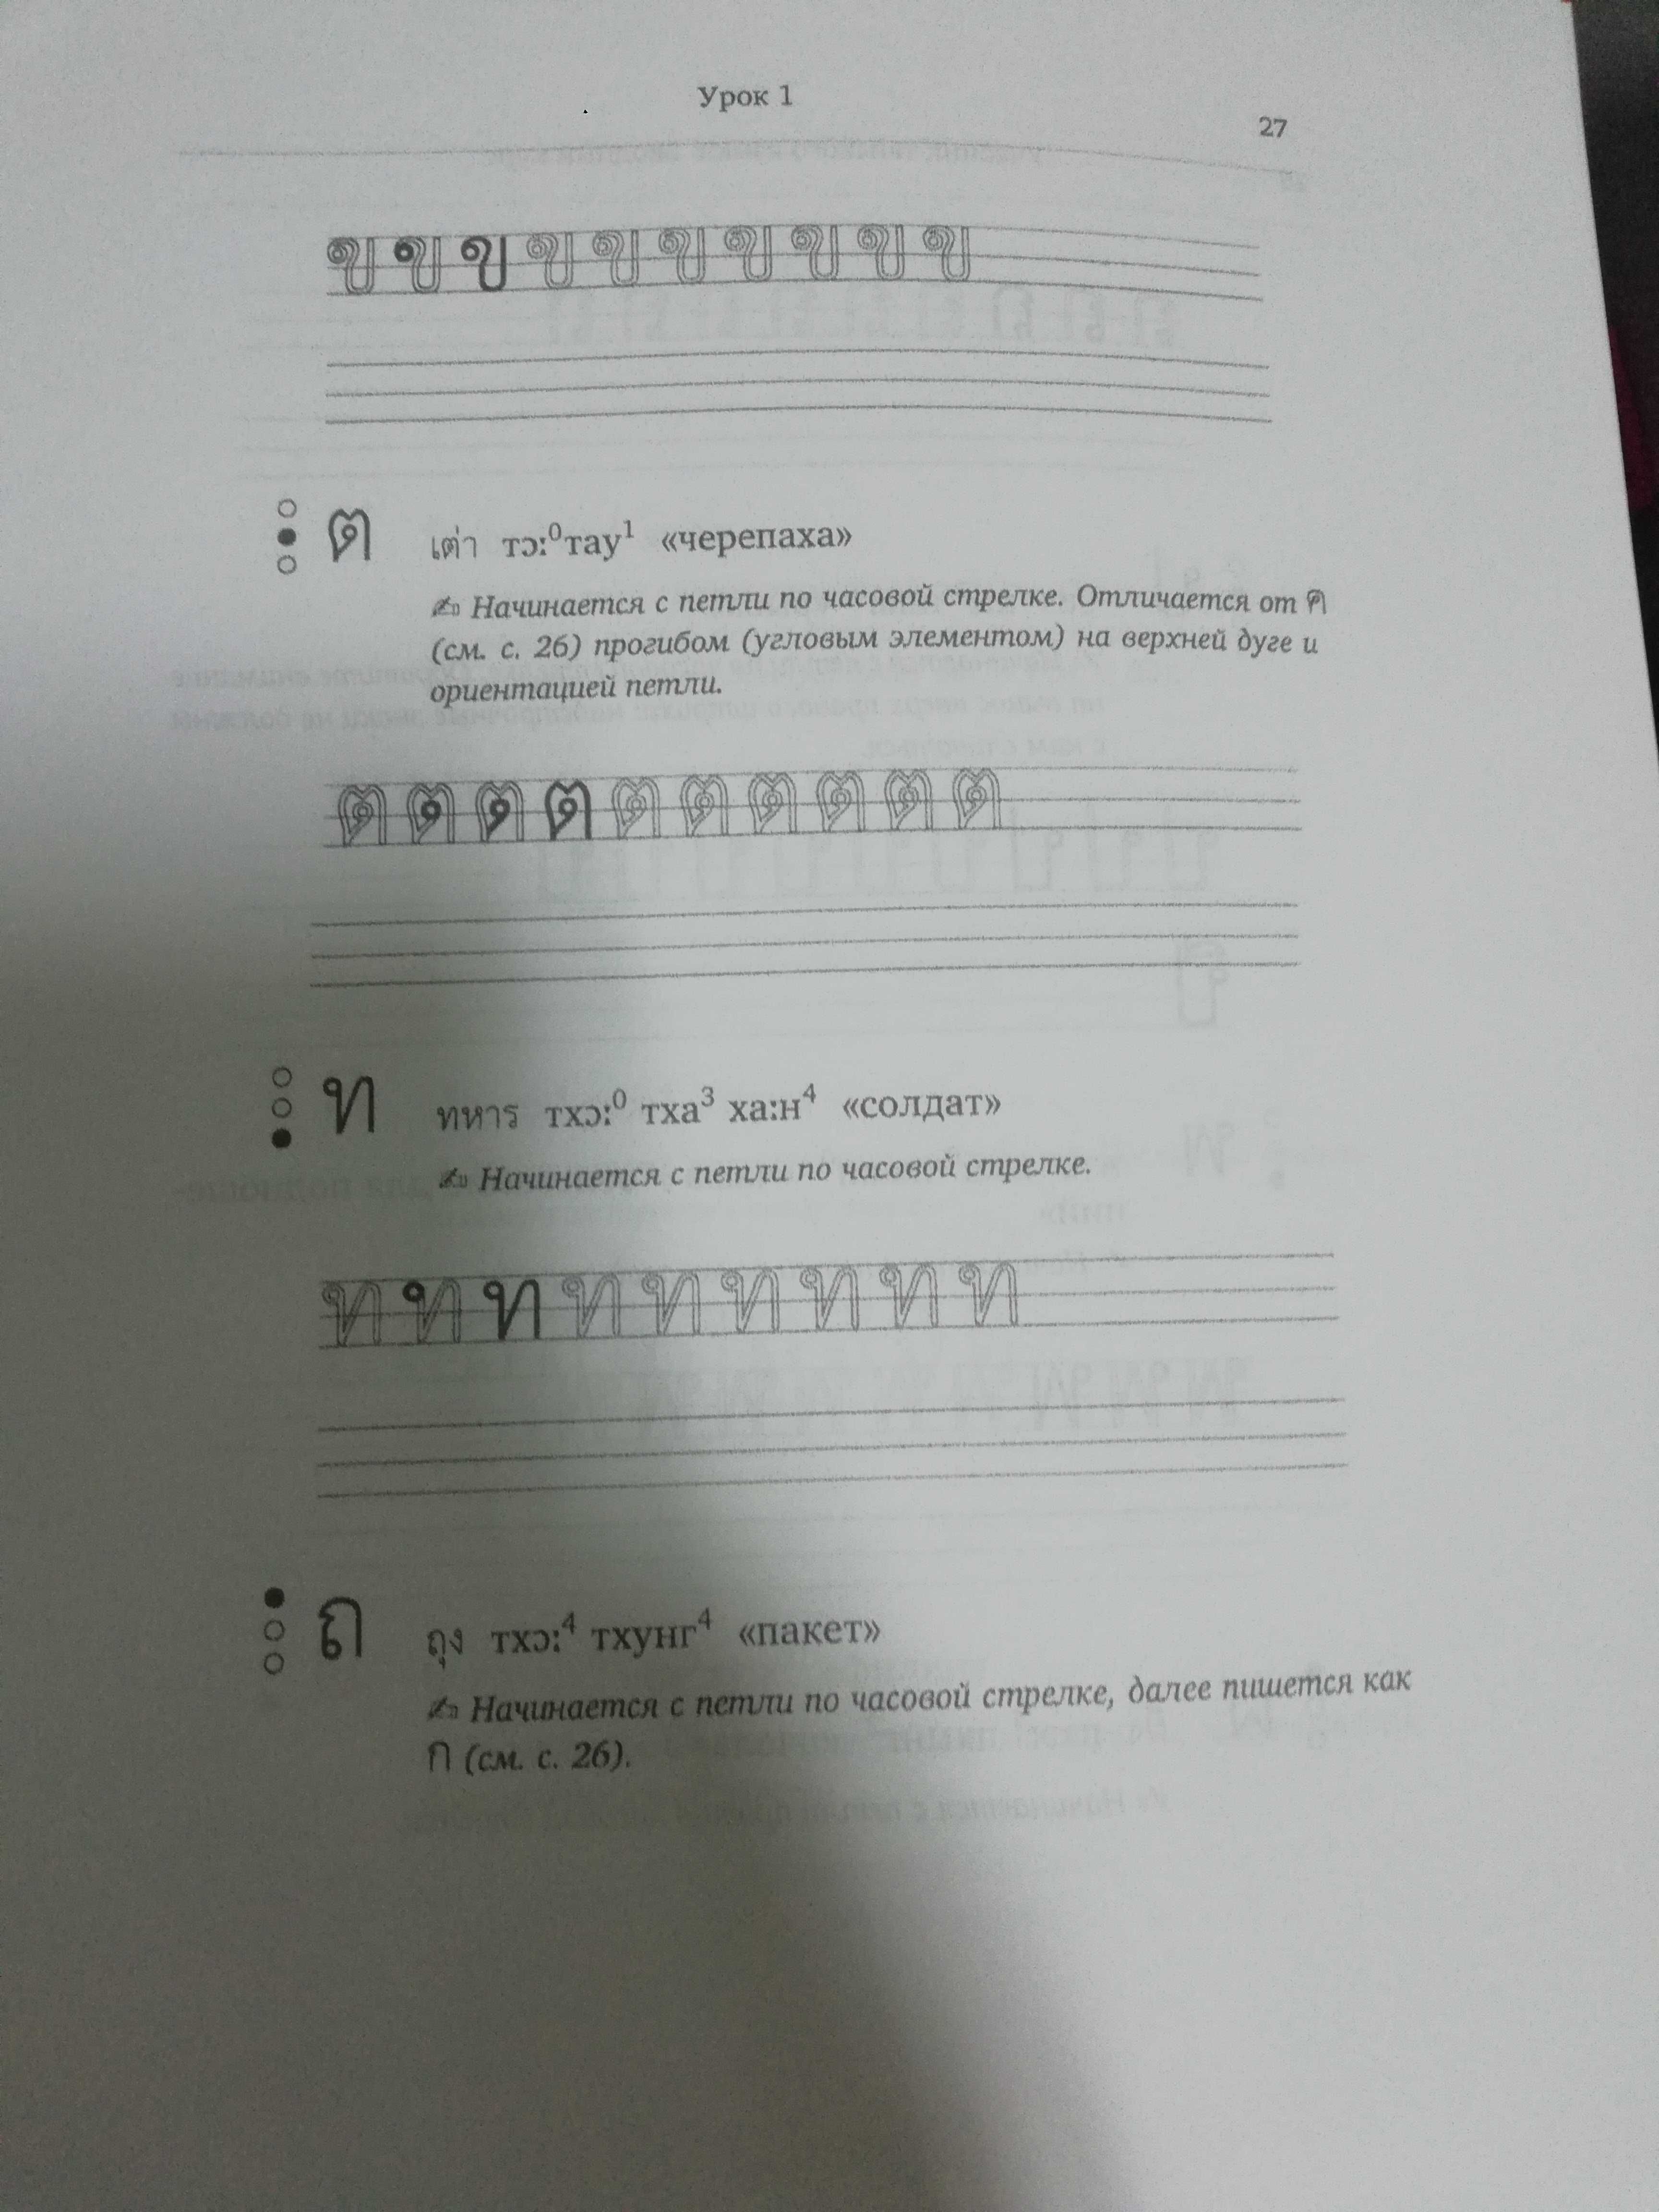 Липилина учебник тайского языка